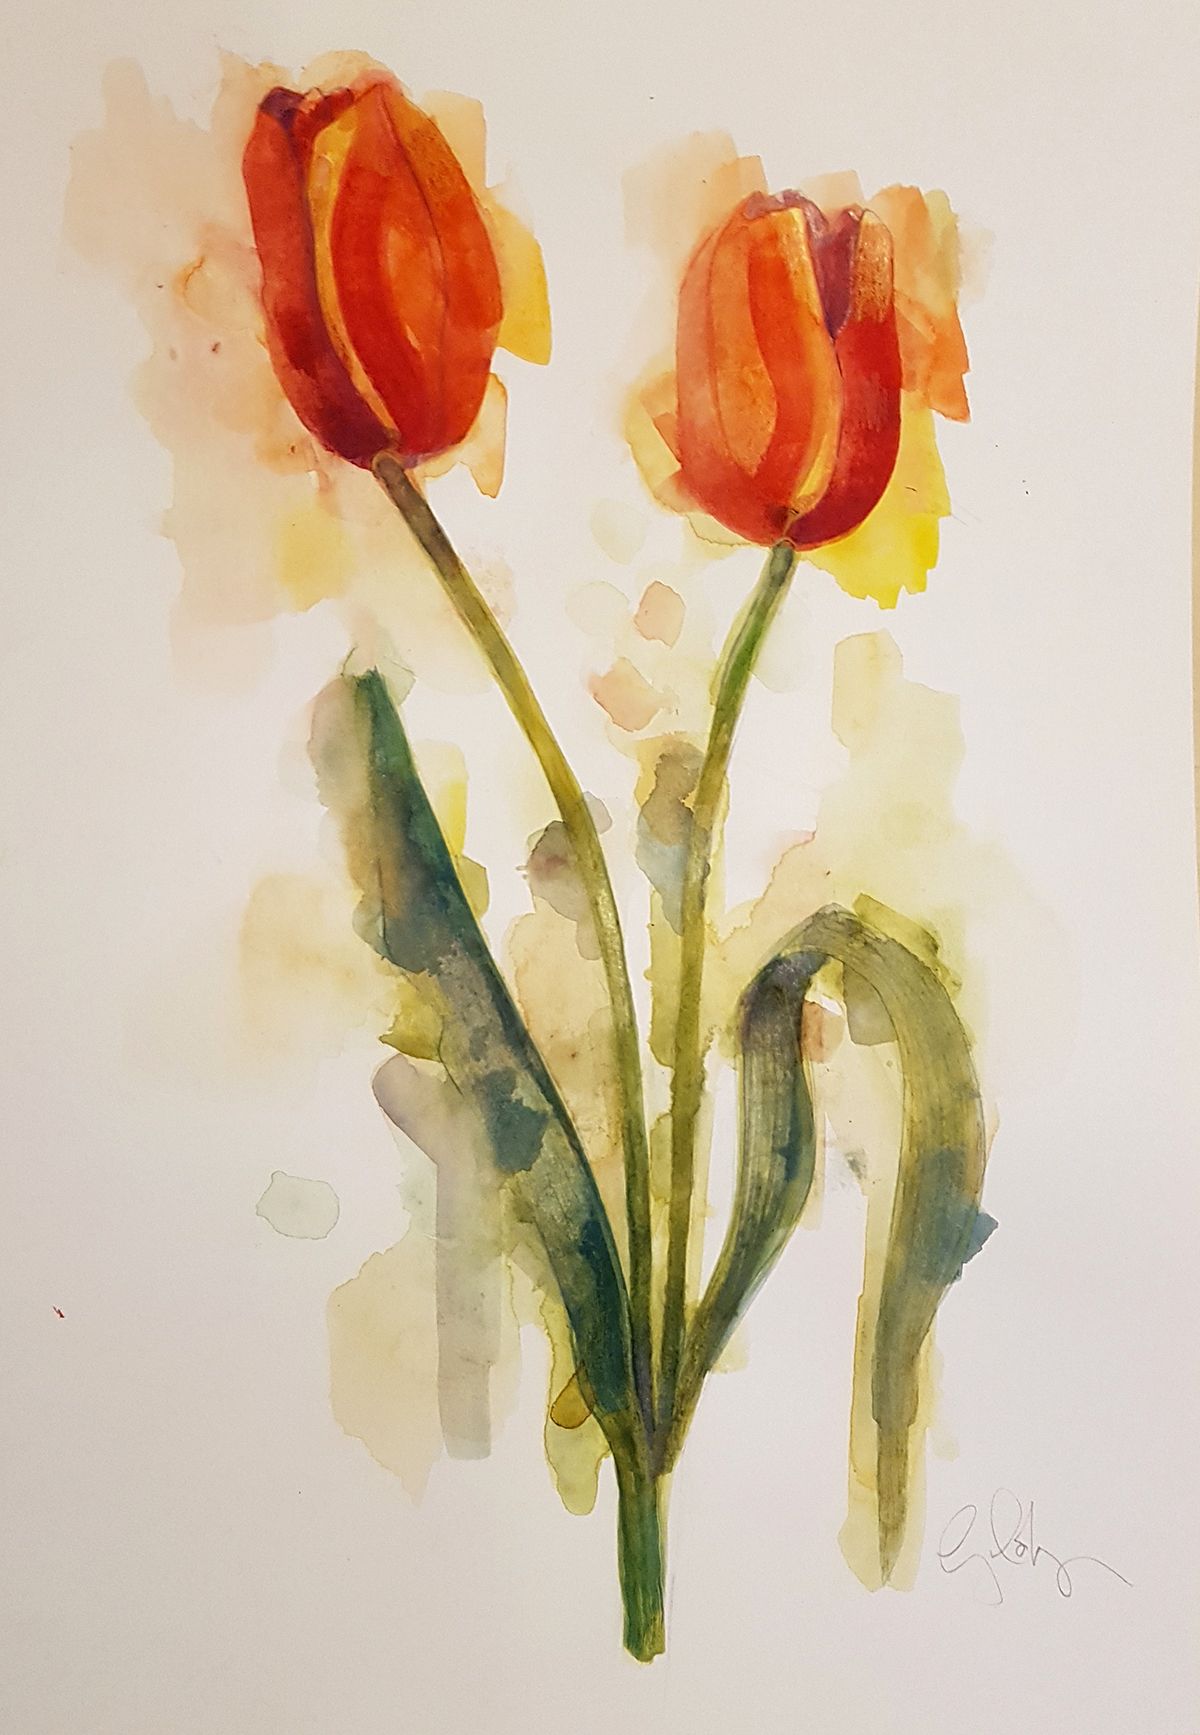 Tulips by Gavin Dobson